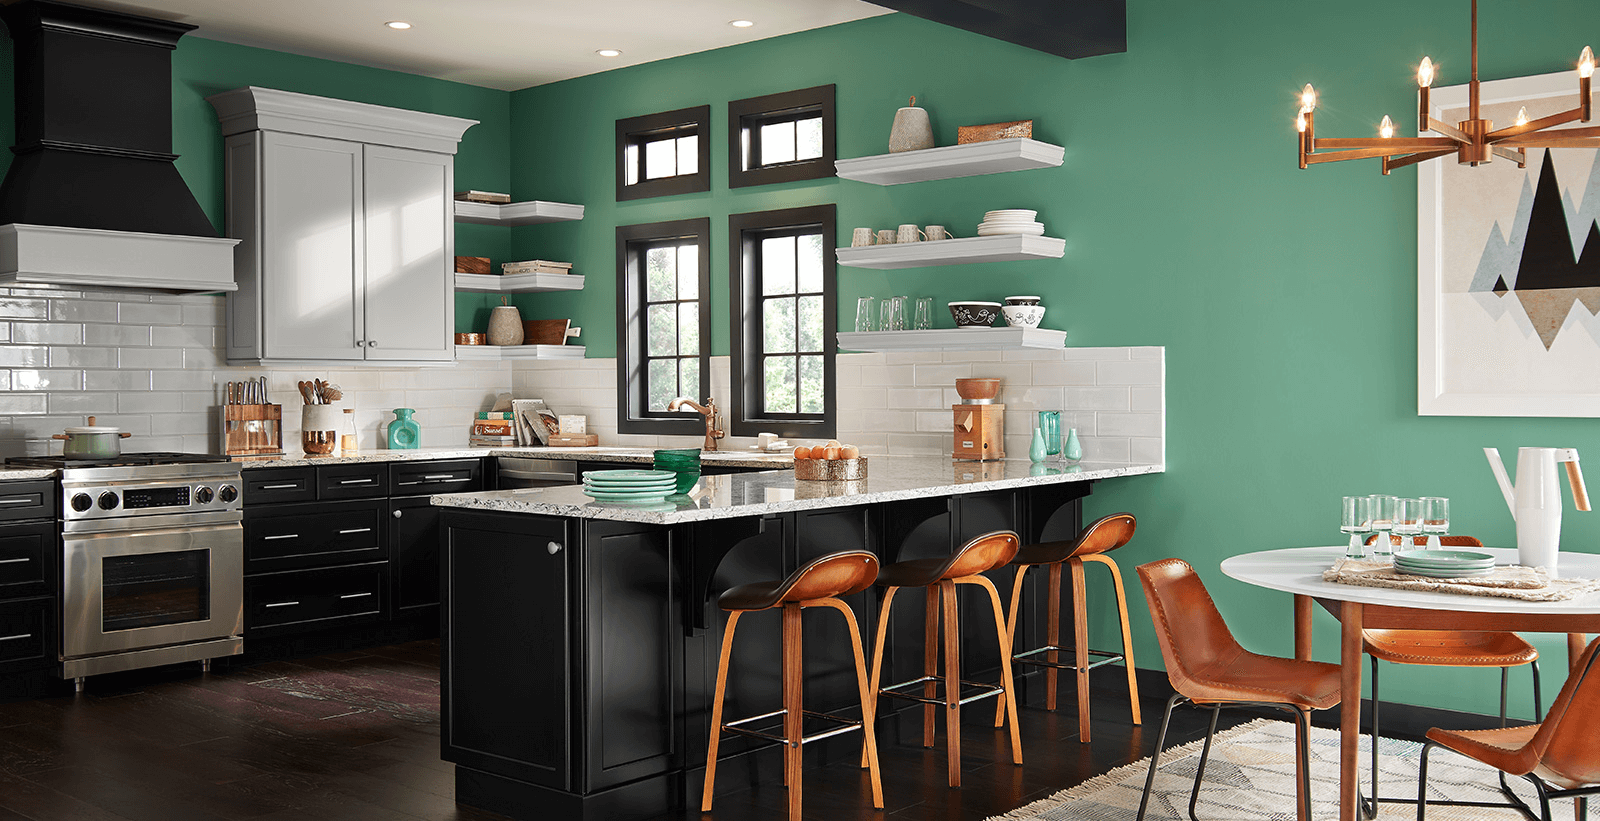 Sơn nội thất màu xanh táo độc đáo cho không gian bếp